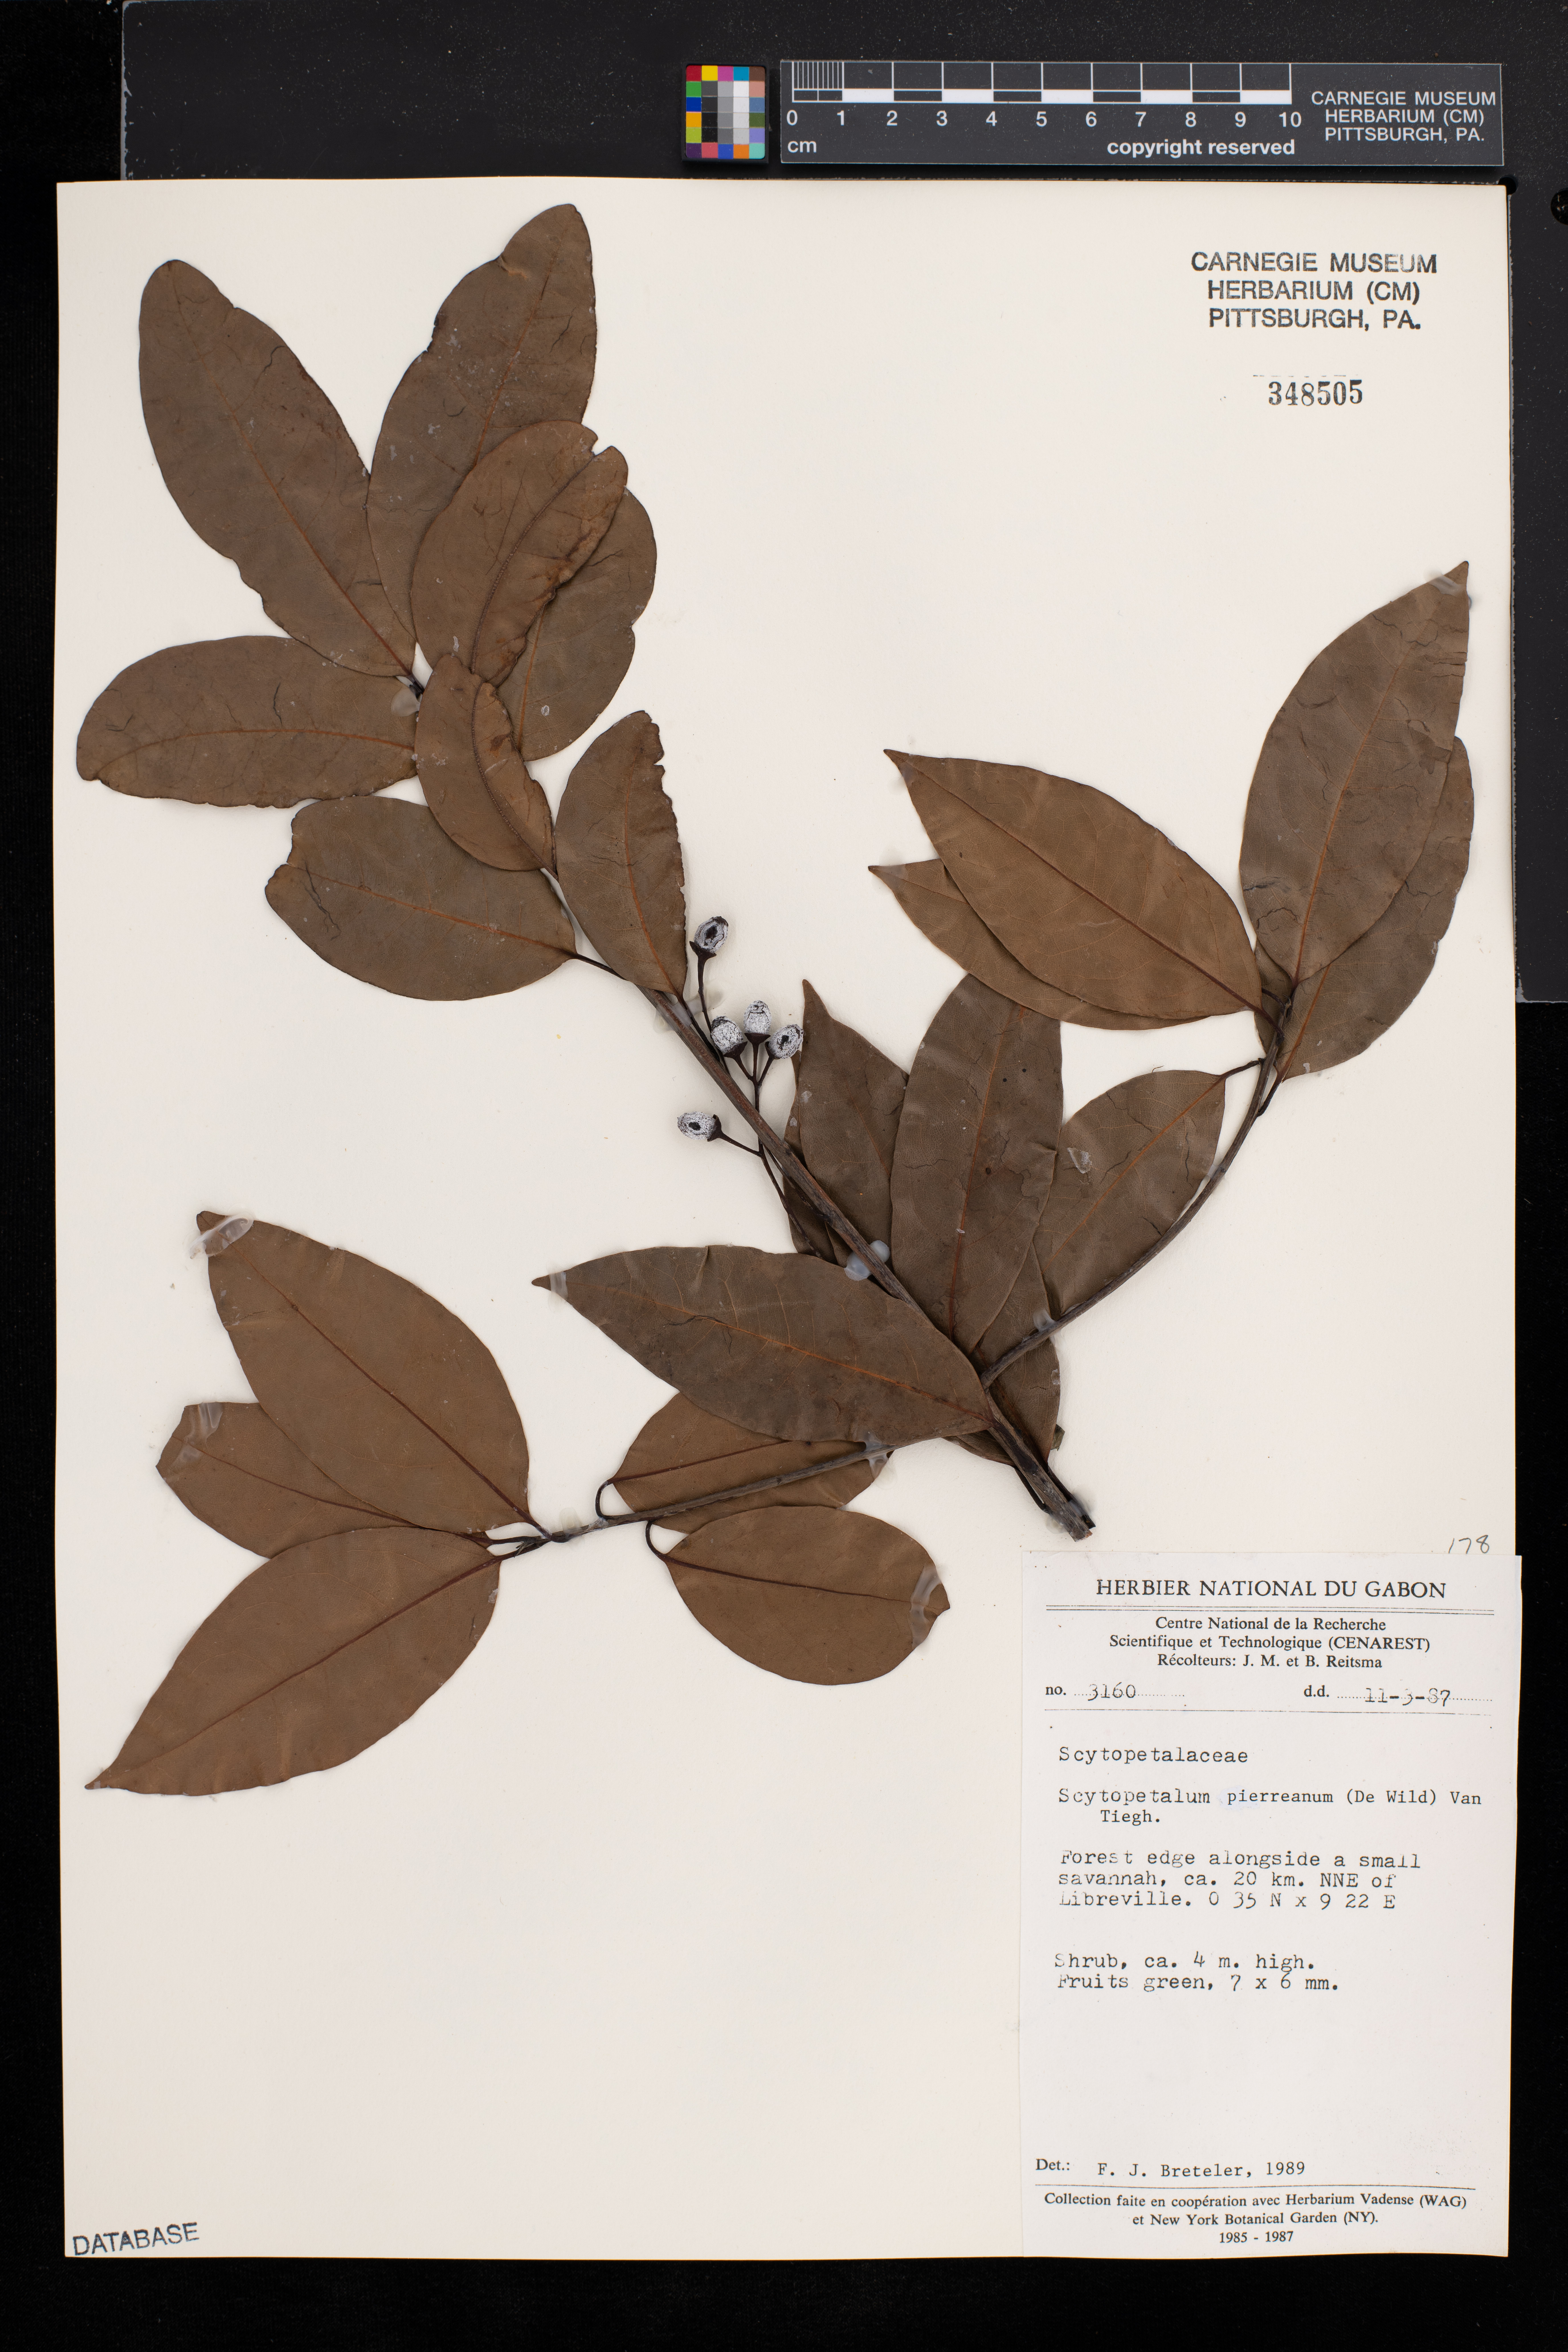 Scytopetalum pierreanum image